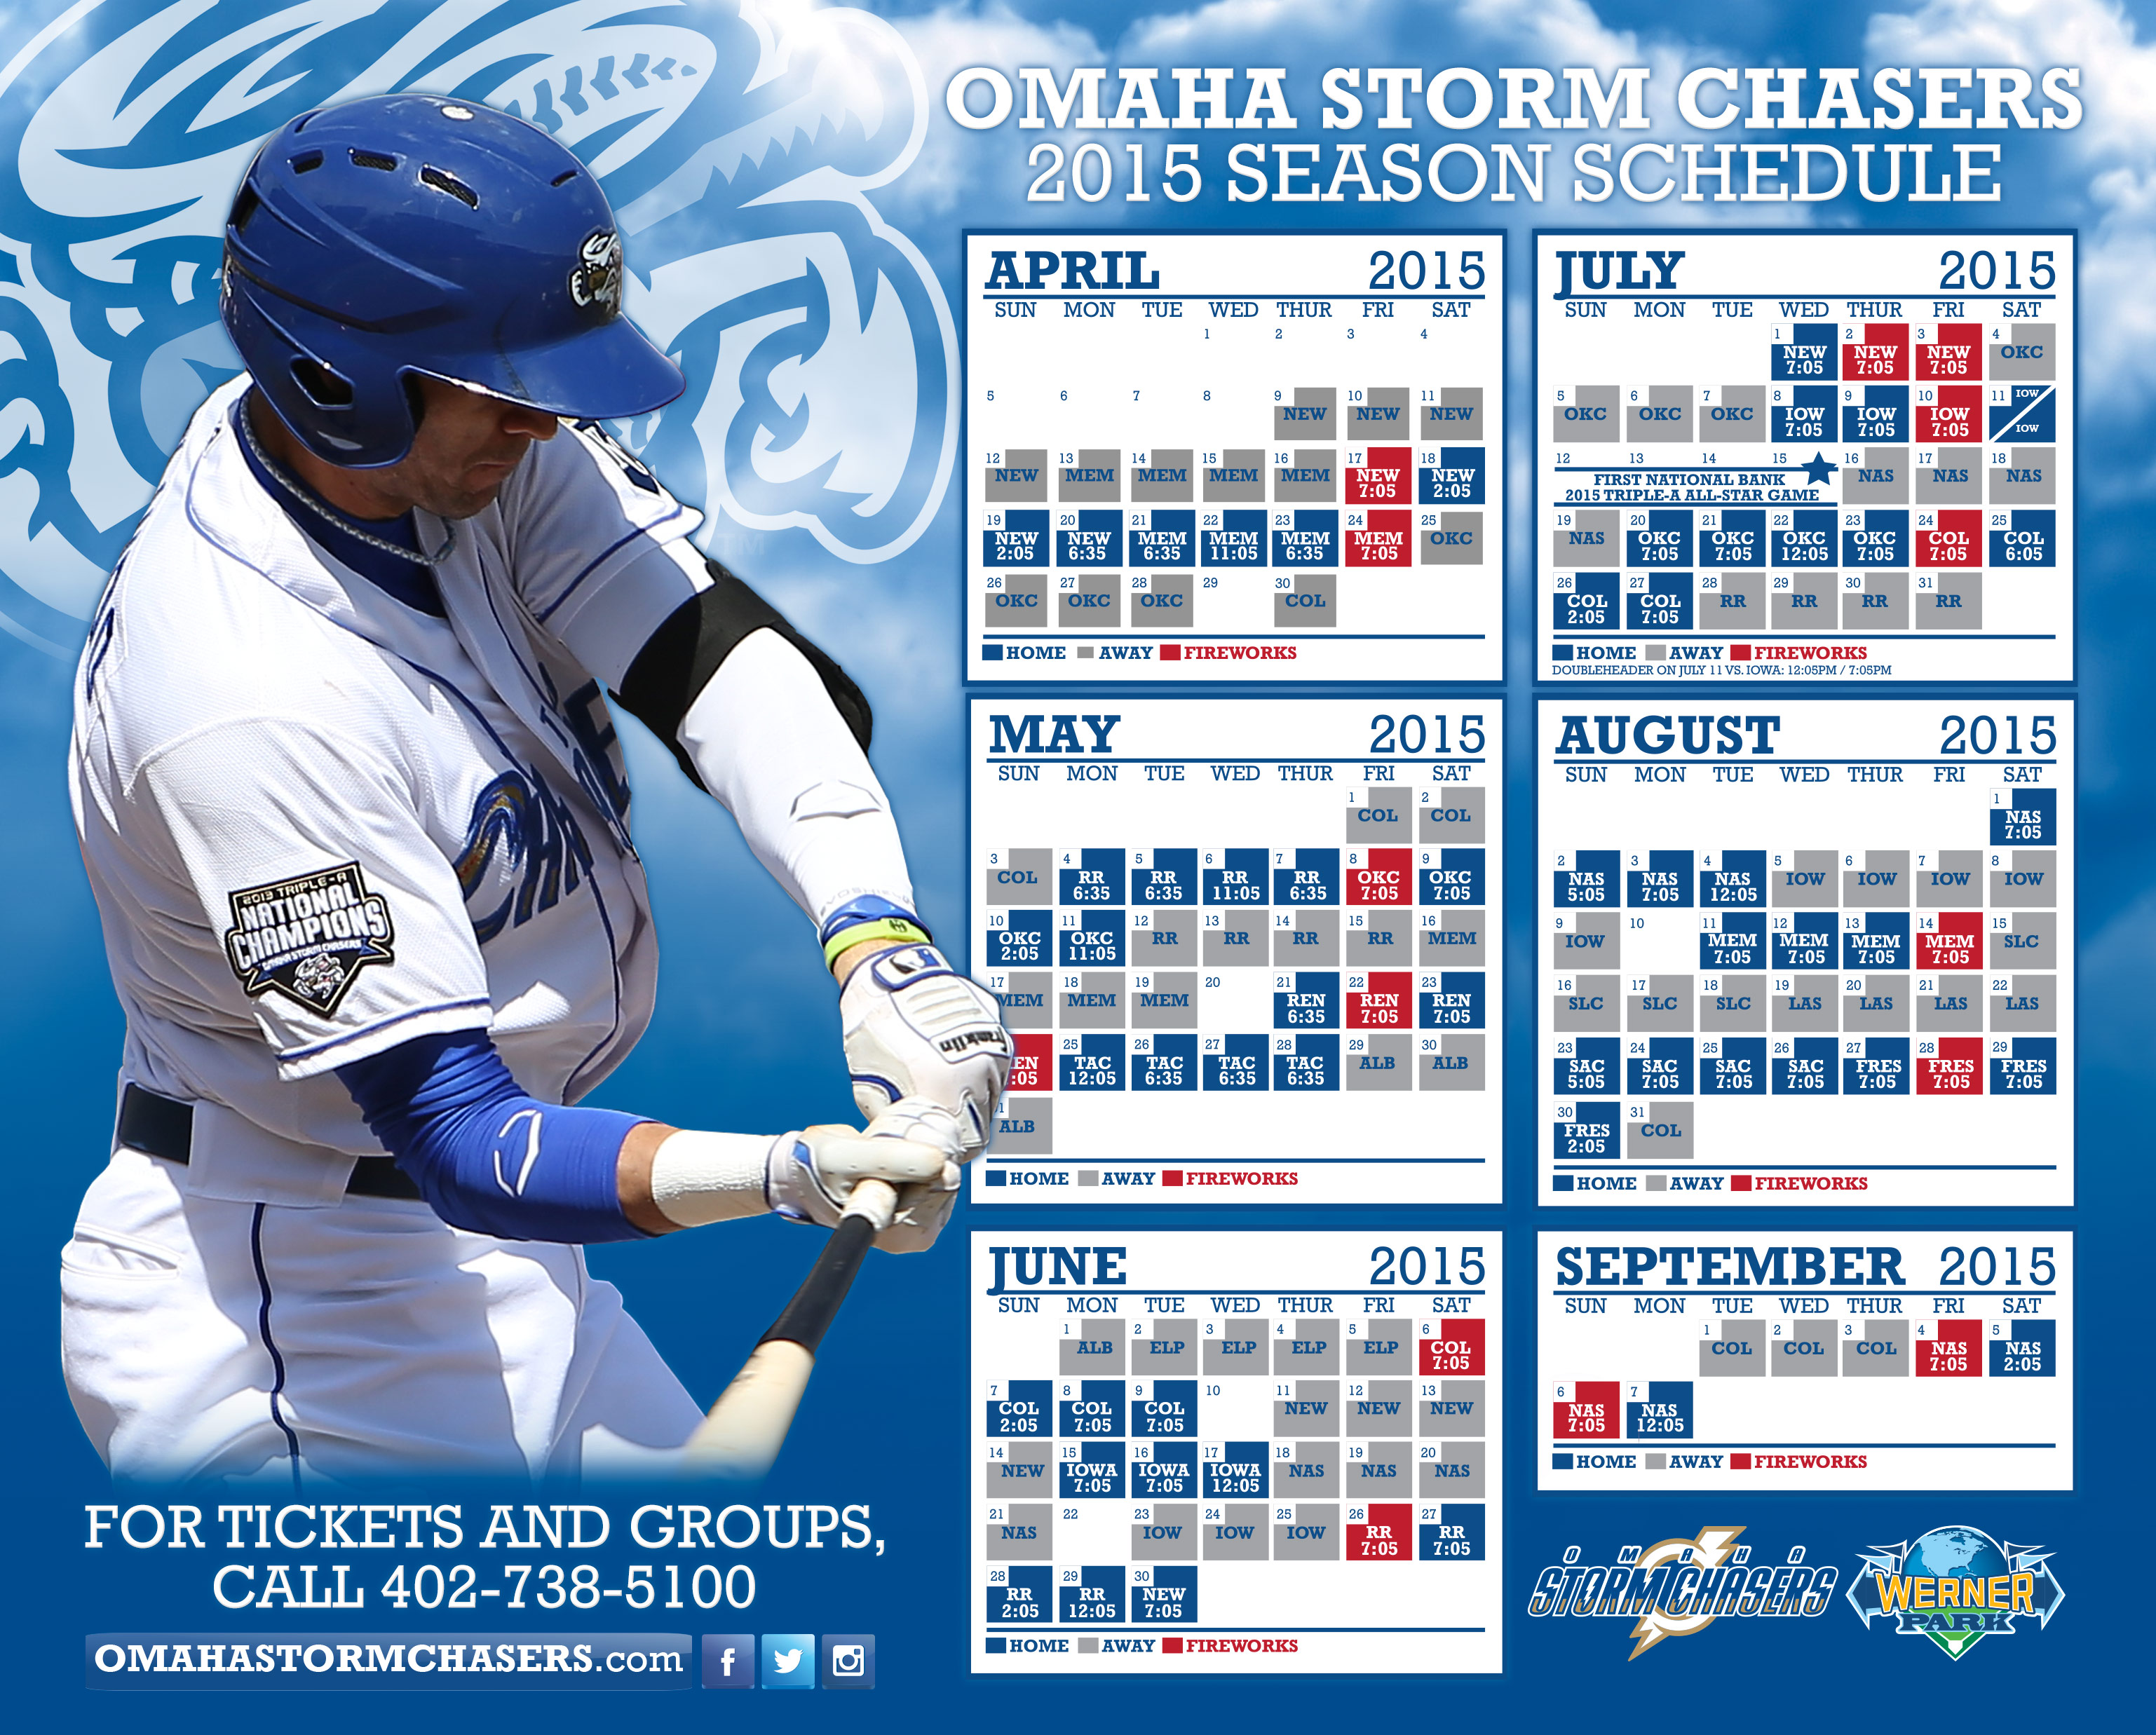 Dodgers Schedule Wallpaper WallpaperSafari